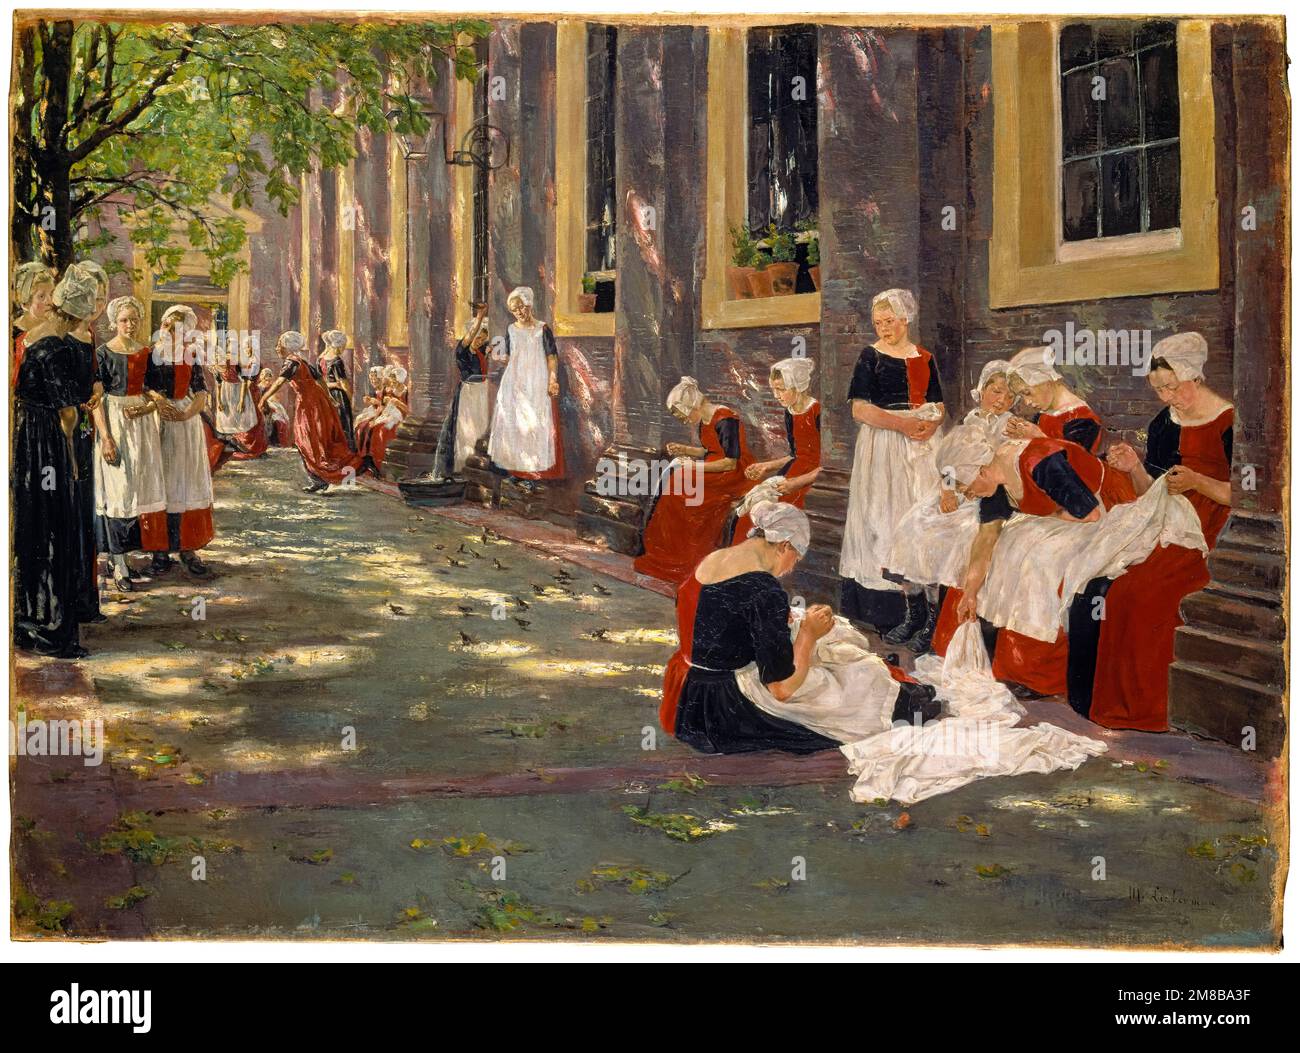 Max Liebermann, la cour de l'orphelinat d'Amsterdam, période libre dans l'orphelinat d'Amsterdam, peinture à l'huile sur toile, 1881-1882 Banque D'Images